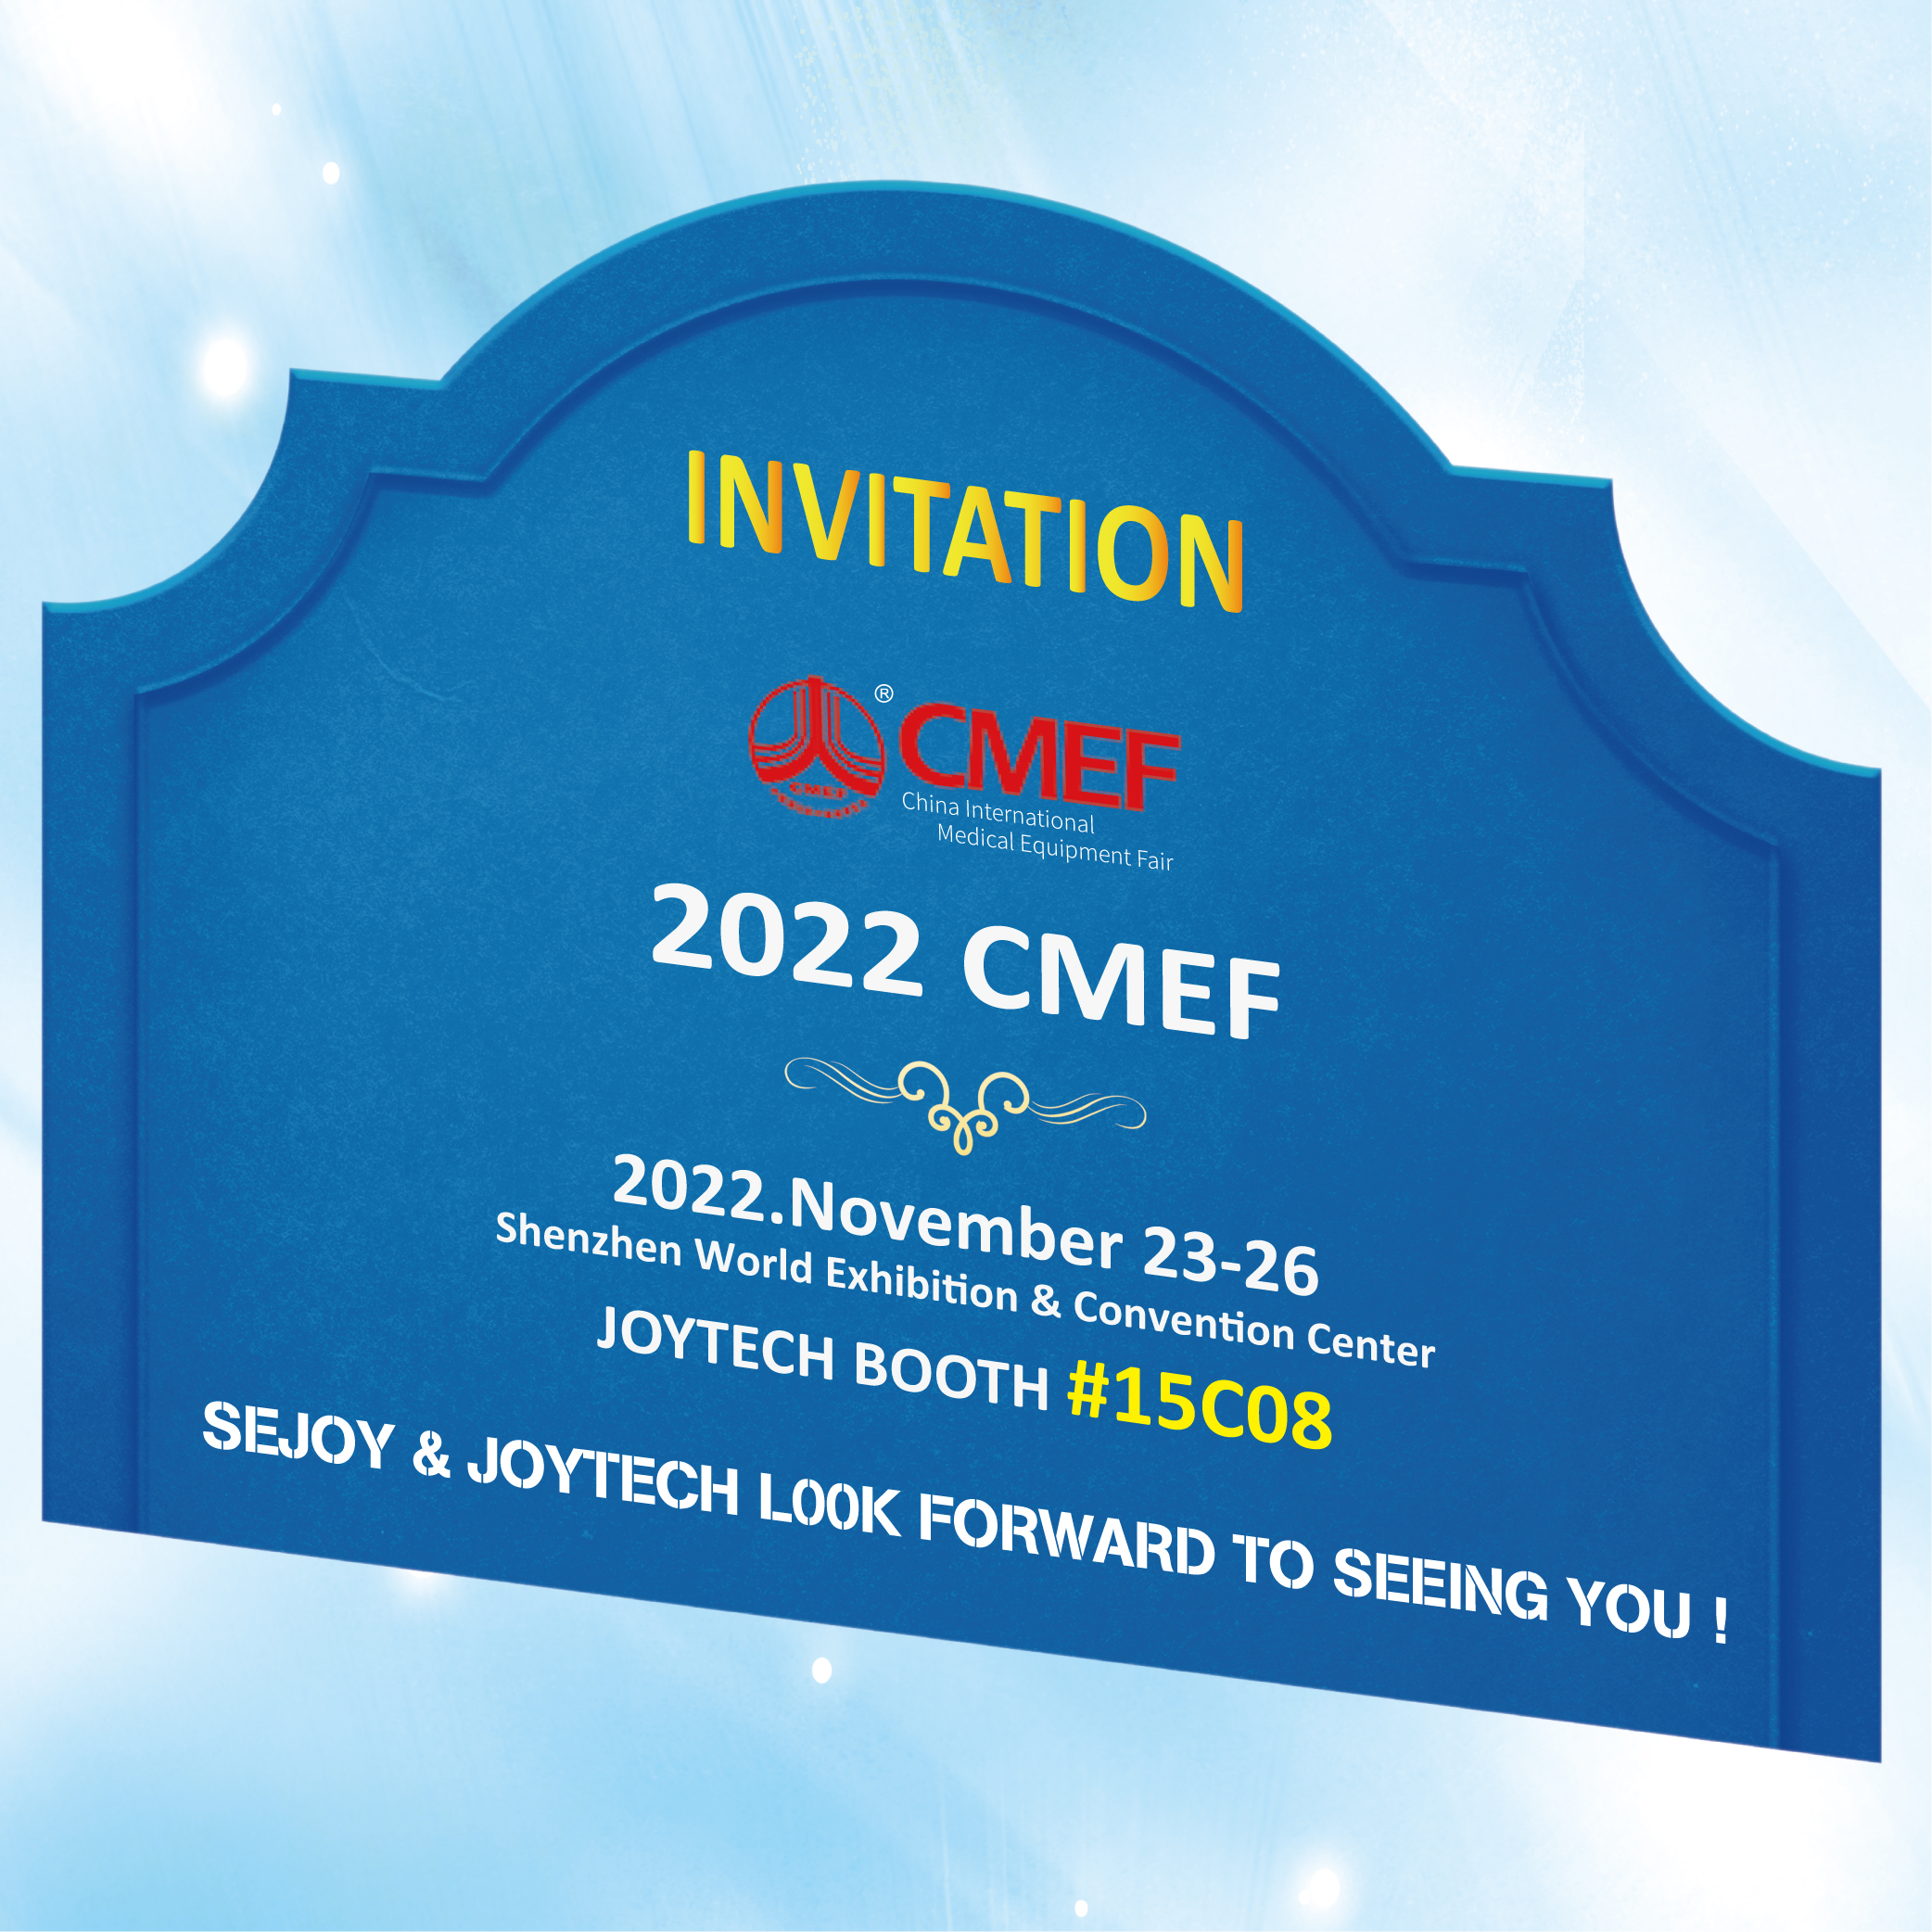 Wamkelekile kwiJoytech Booth eCMEF 2022